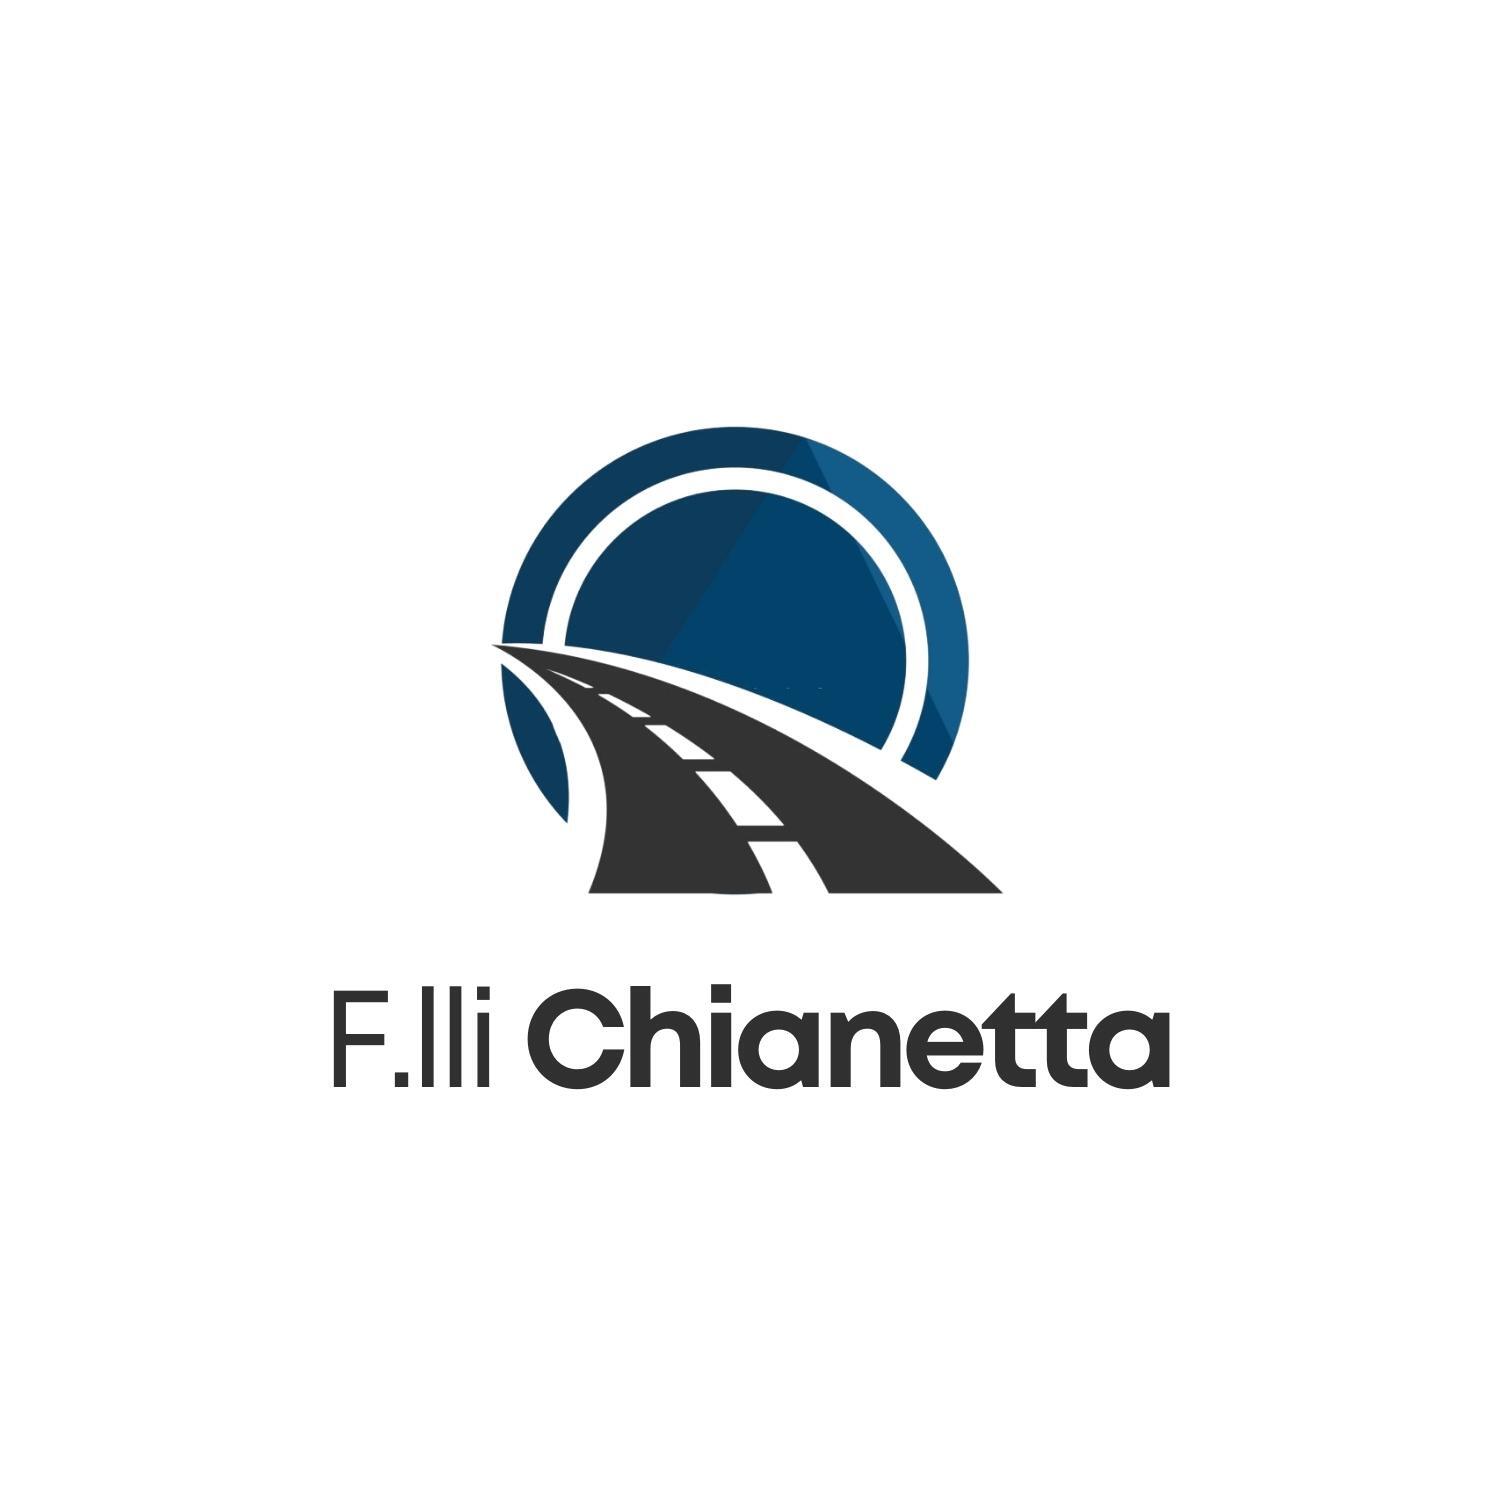 F.lli Chianetta logo